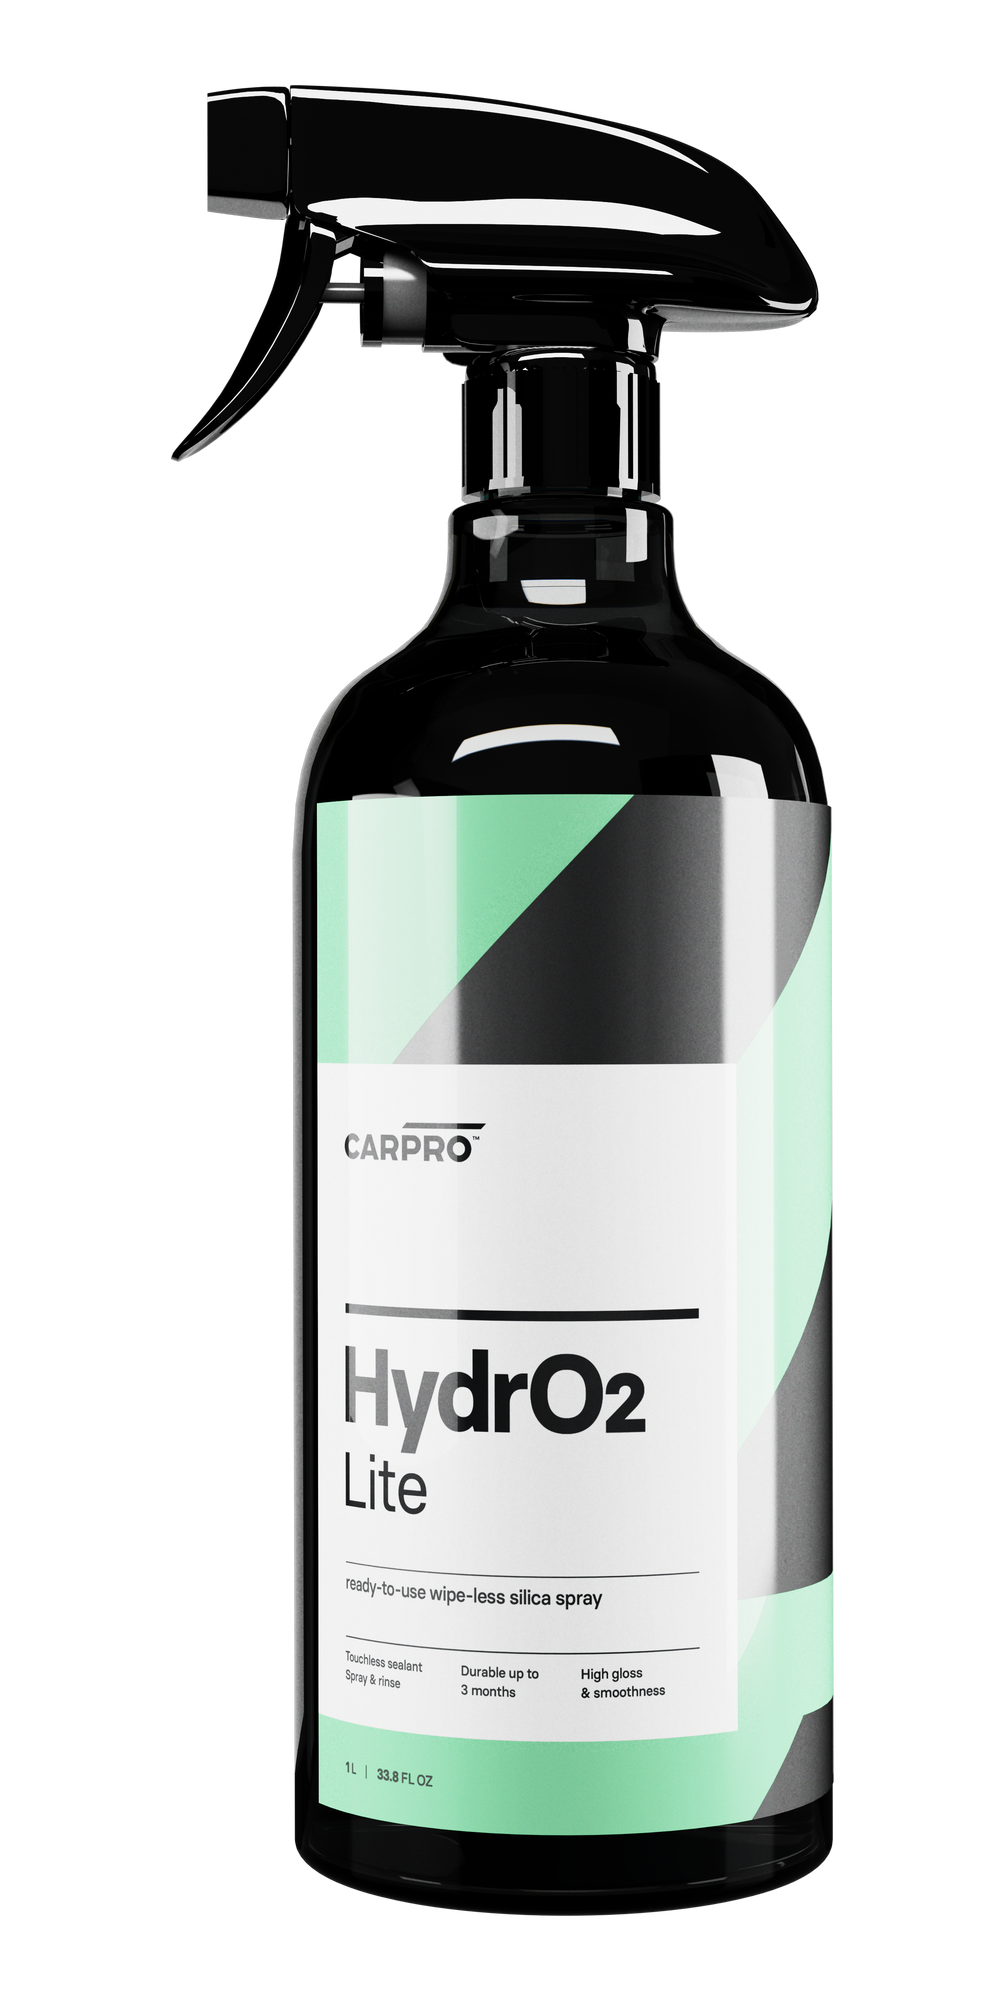 CARPRO HydrO2 Lite 1L - Ready-to-use SiO2 sealant